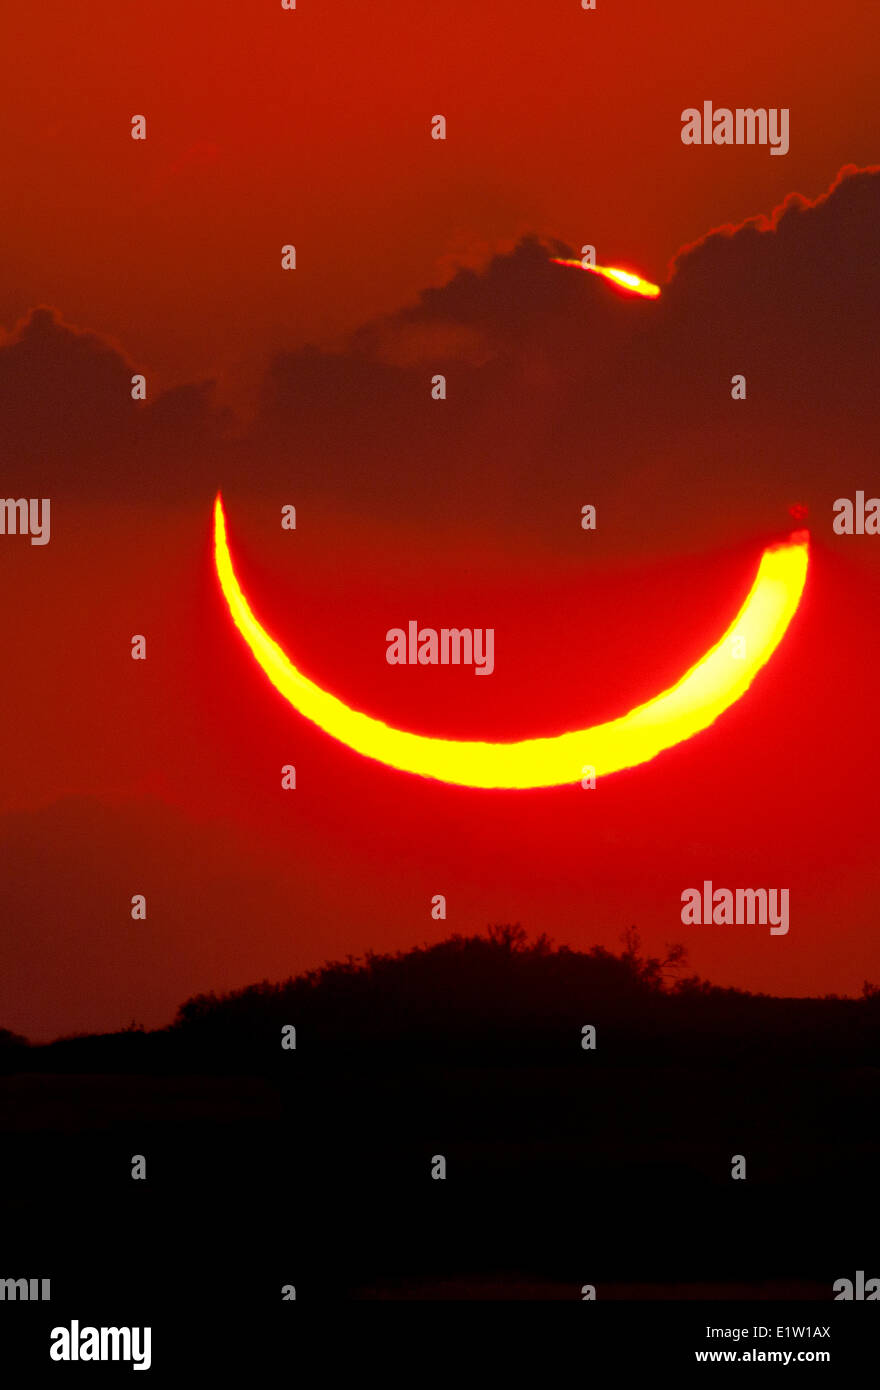 Anulare eclissi solare del 20 maggio 2012. Fotografato al tramonto dalla Texas occidentale. Foto Stock